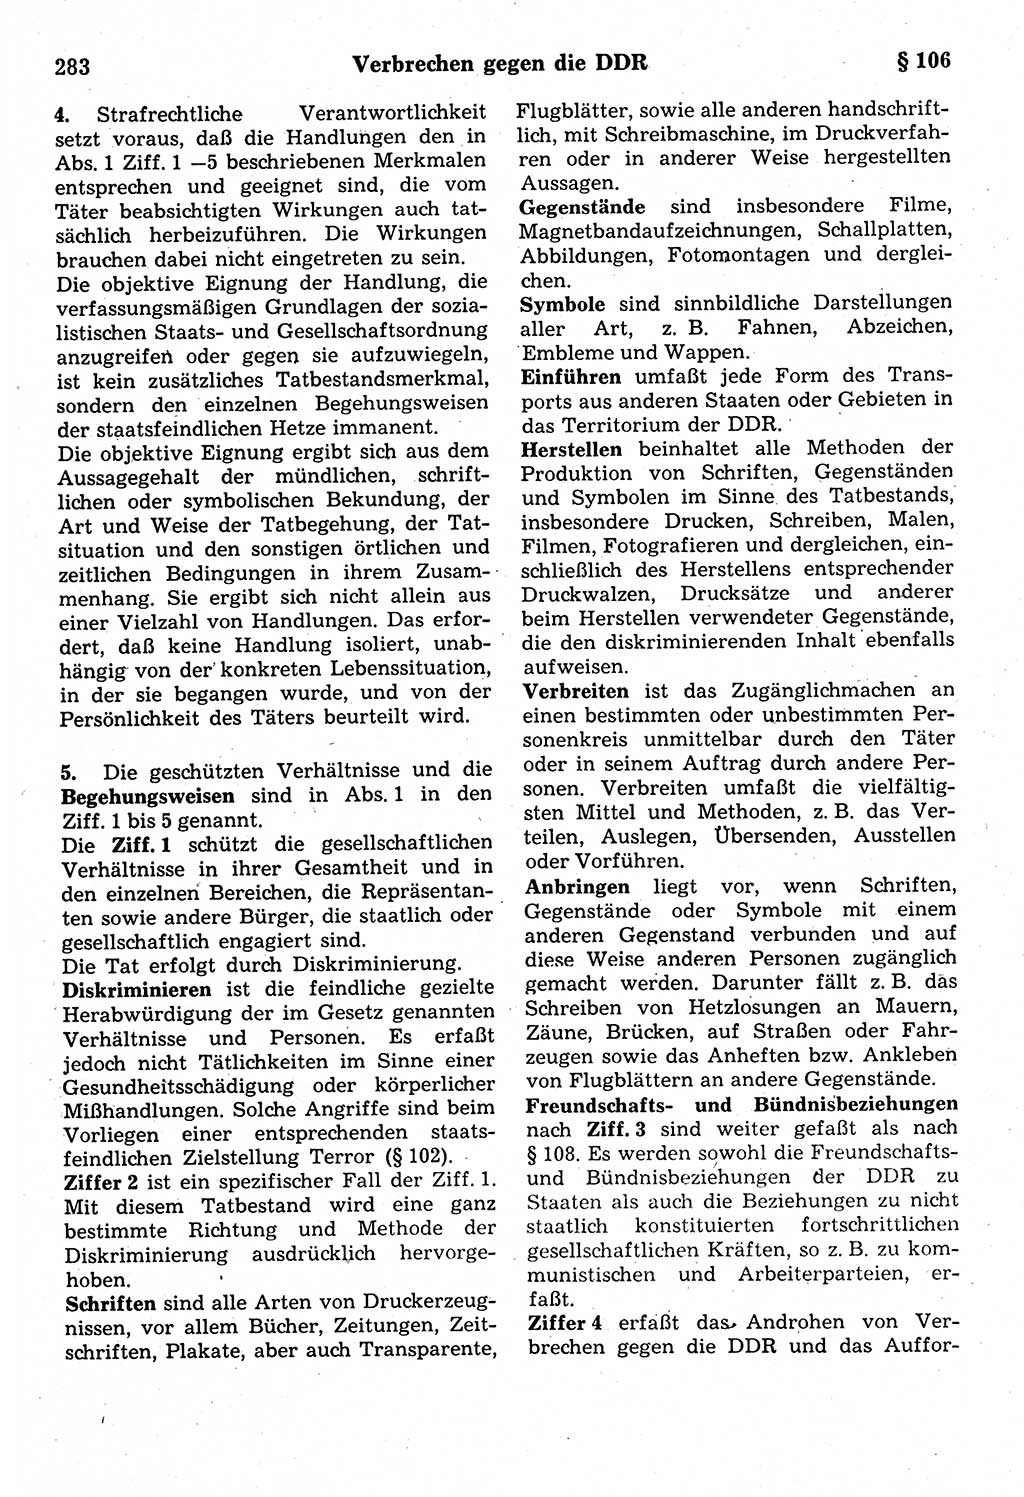 Strafrecht der Deutschen Demokratischen Republik (DDR), Kommentar zum Strafgesetzbuch (StGB) 1987, Seite 283 (Strafr. DDR Komm. StGB 1987, S. 283)